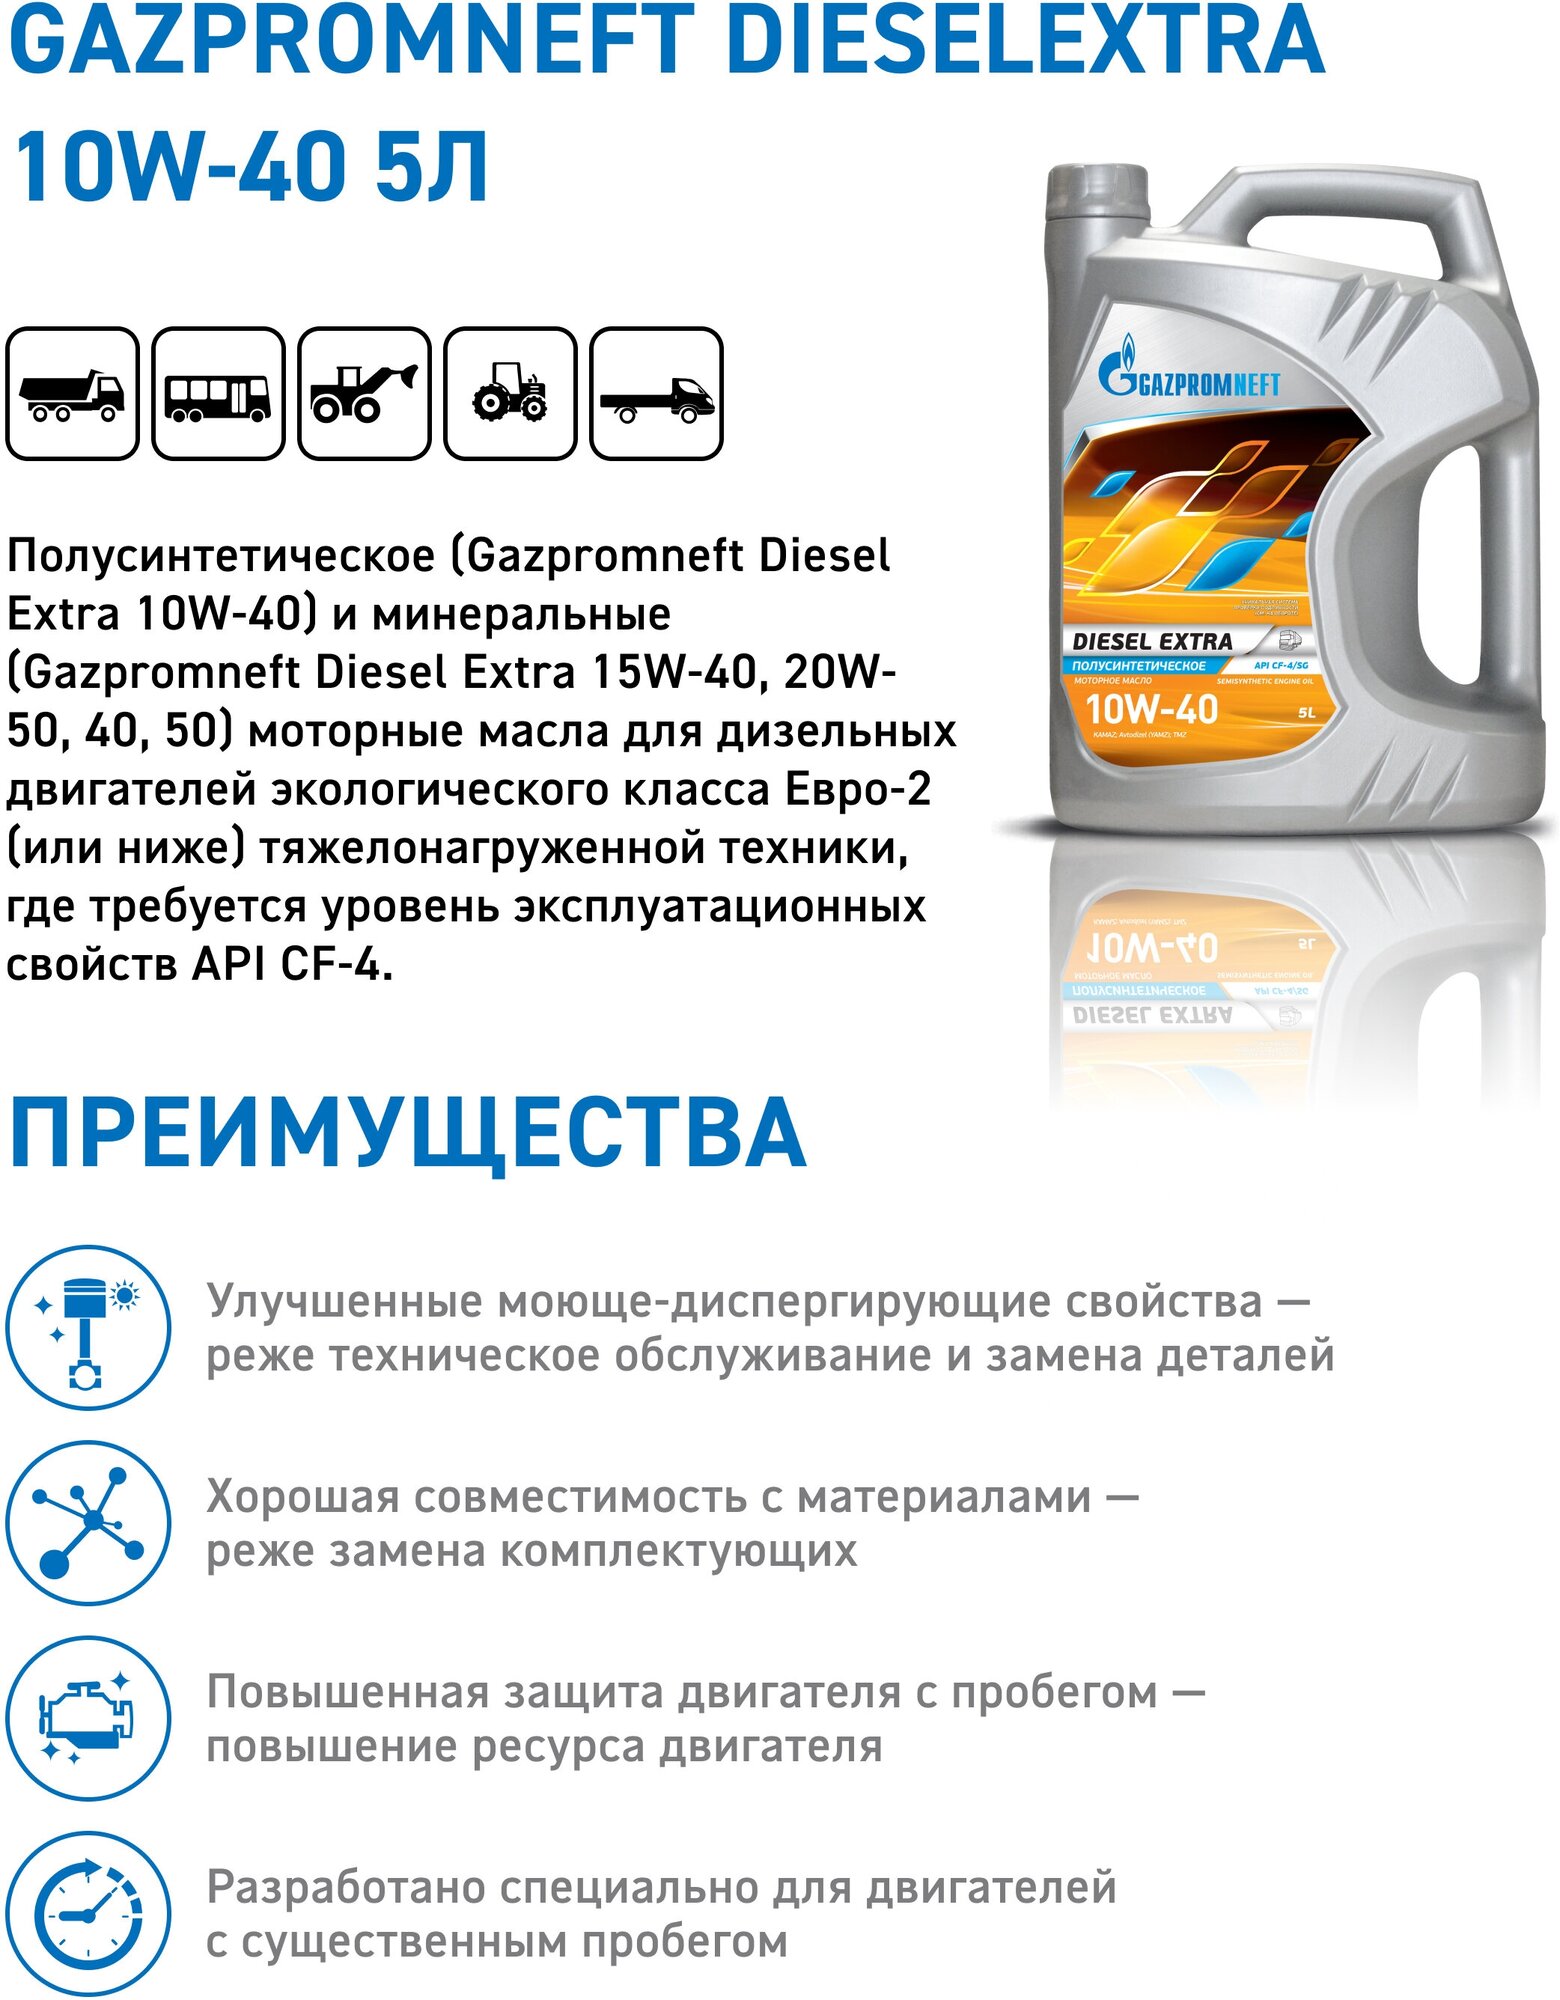 Синтетическое моторное масло Газпромнефть Diesel Premium 10W-40